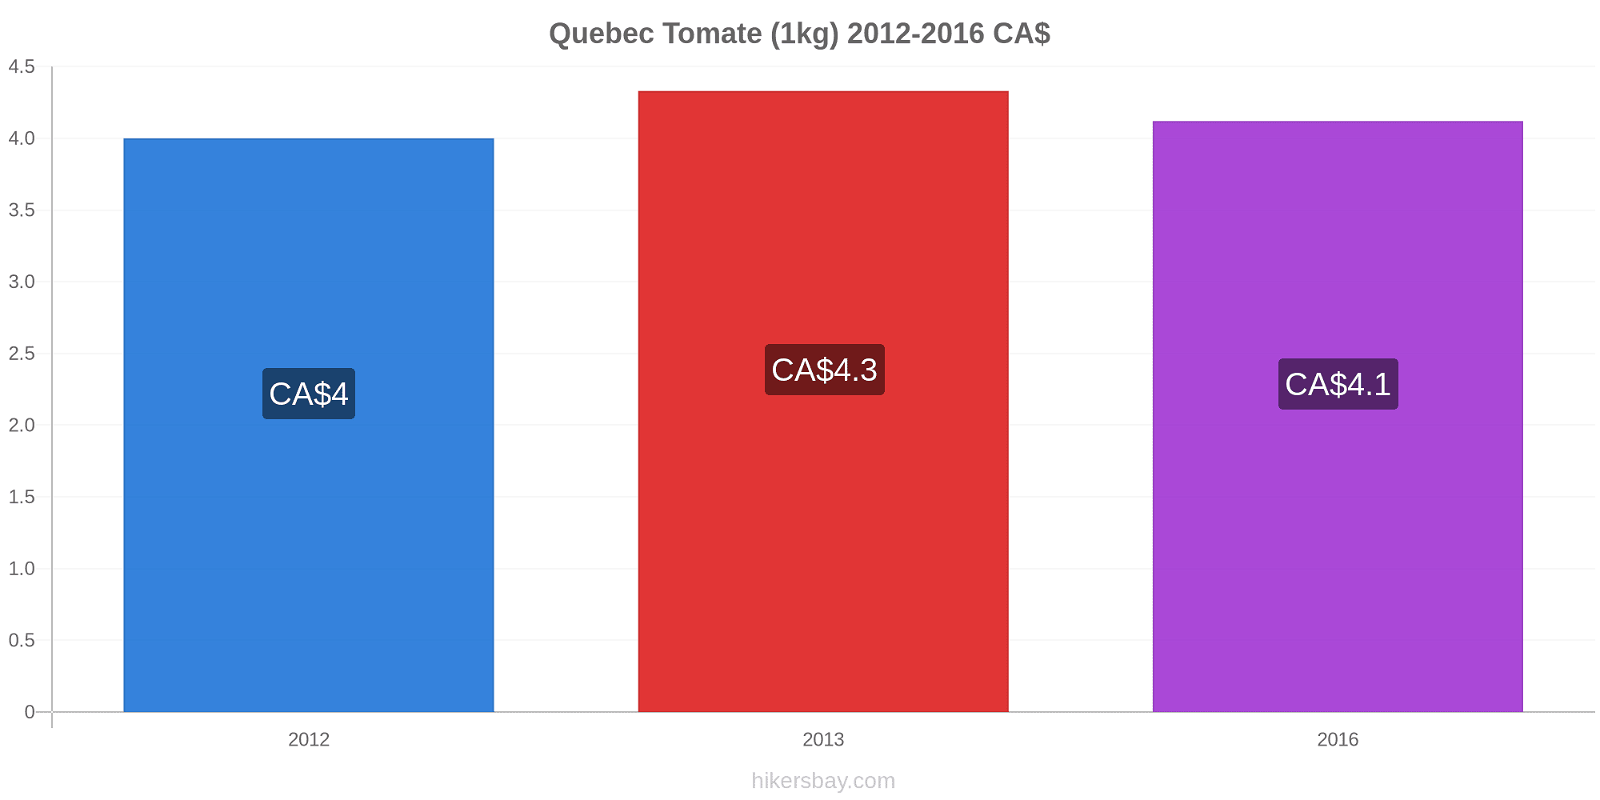 Quebec cambios de precios Tomate (1kg) hikersbay.com